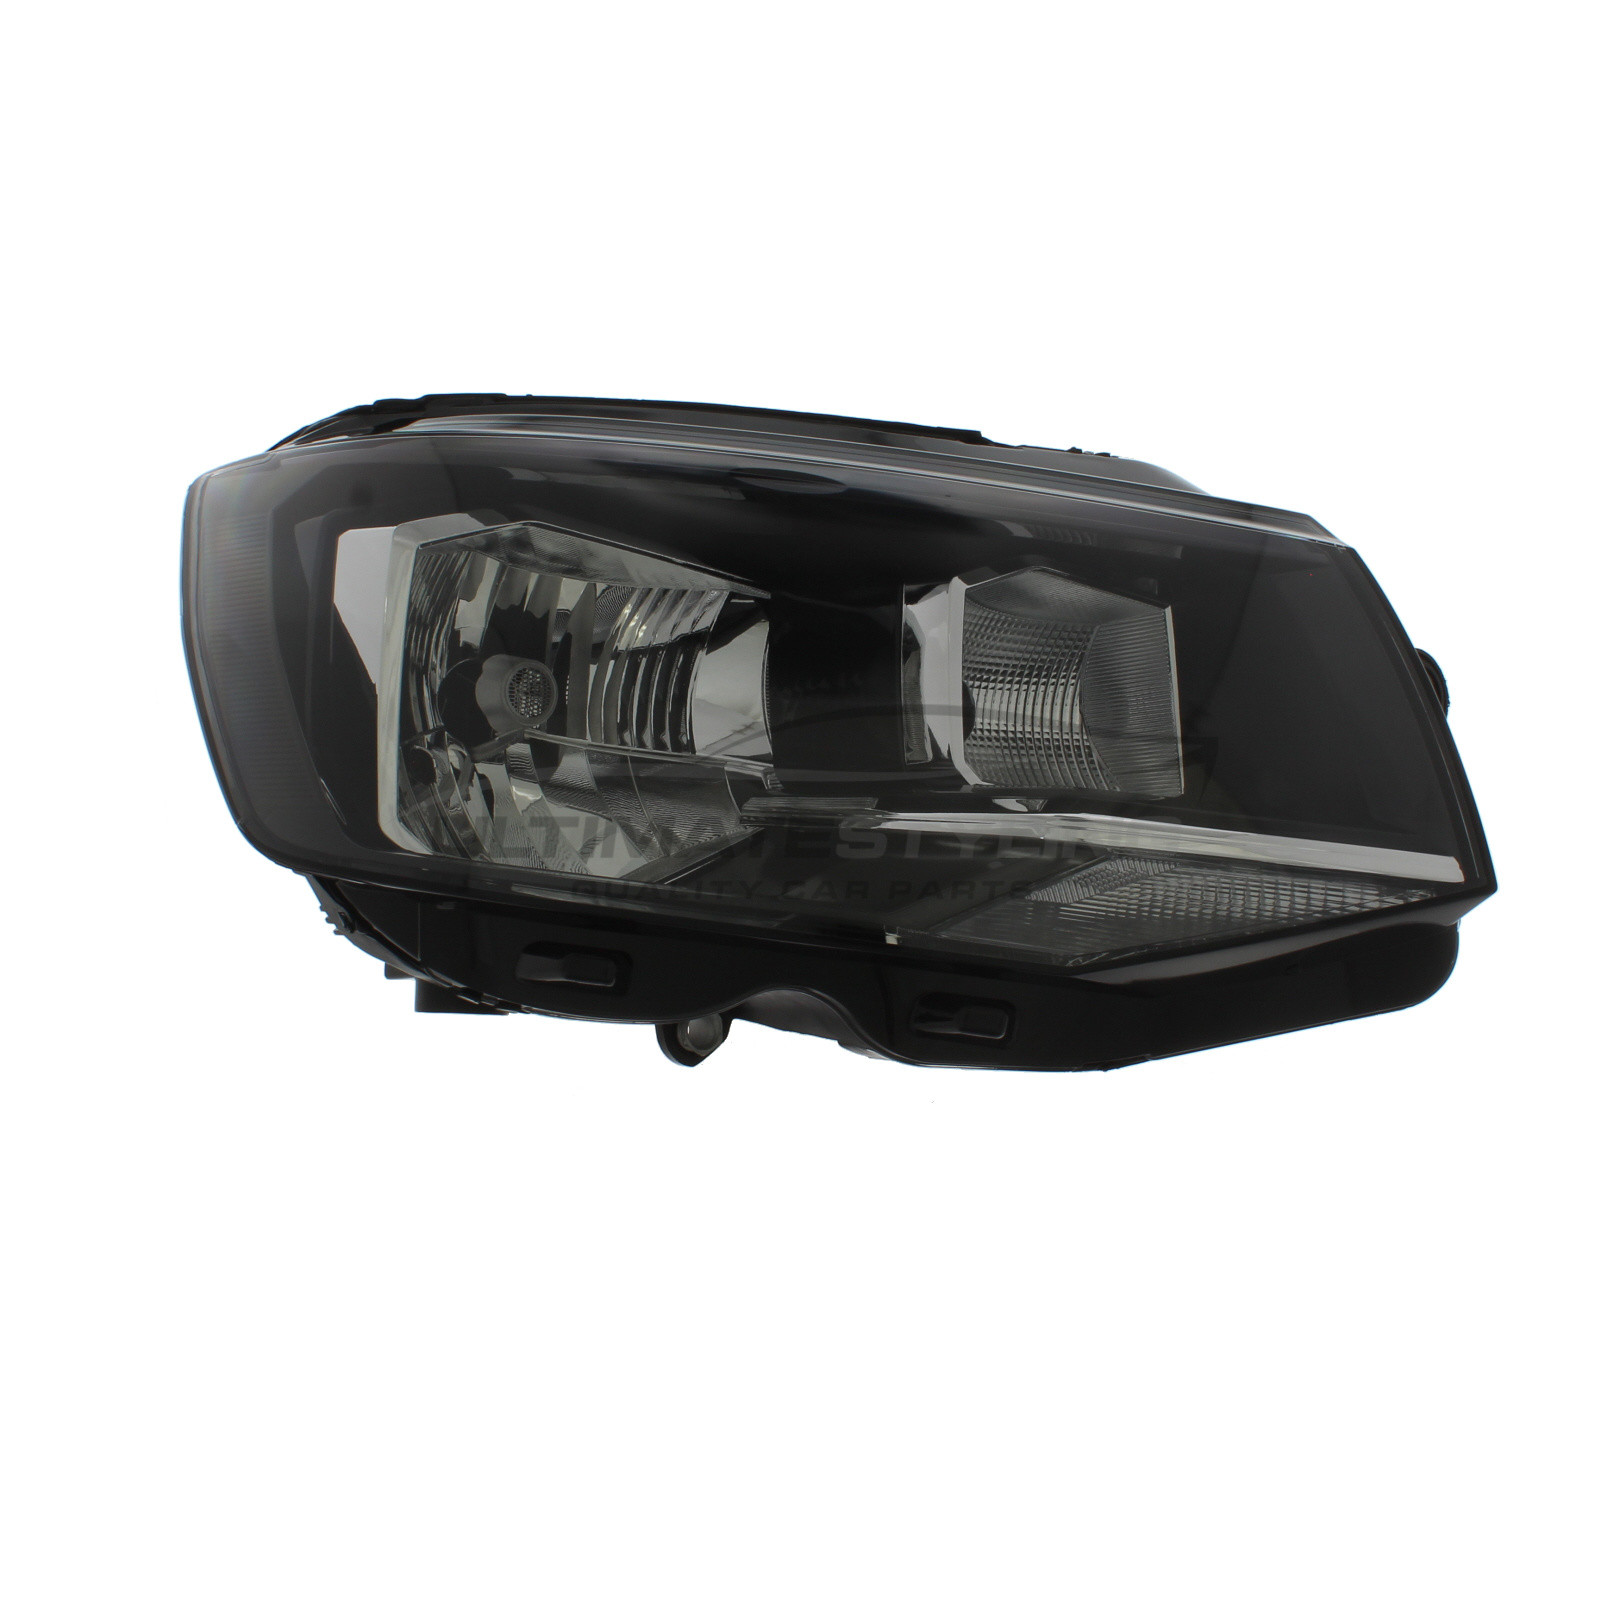 Headlight / Headlamp for VW Transporter